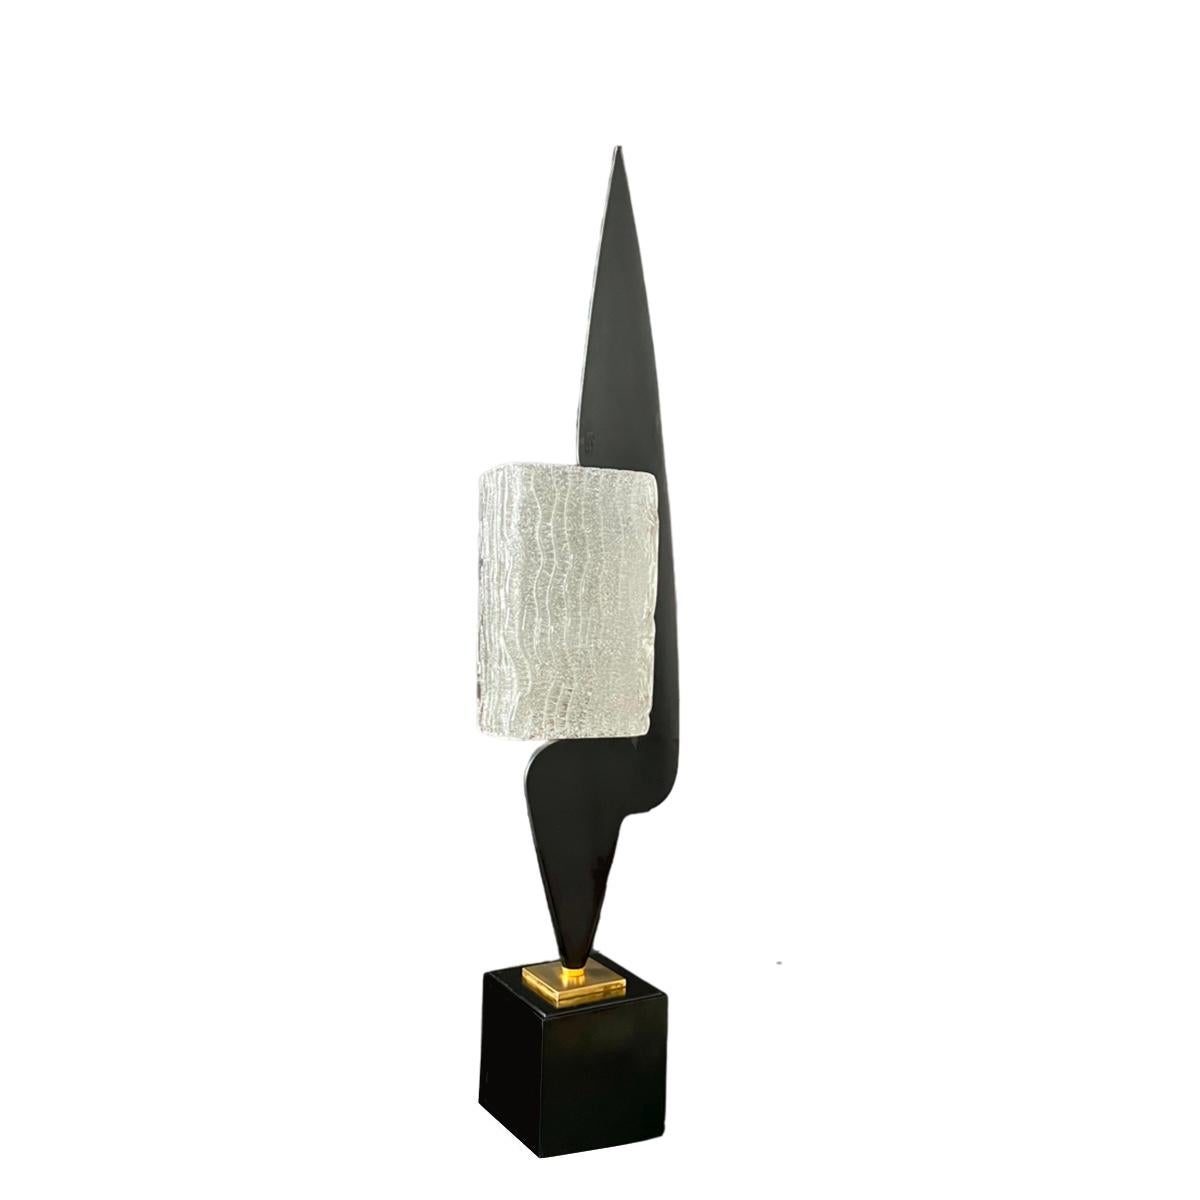 Seltene Arlus Lampe aus schwarz lackiertem Holz. Ein würfelförmiger, schwarz lackierter Holzsockel trägt einen kleinen quadratischen Sockel aus Messing, auf dem eine längliche Form aus demselben Material befestigt ist. Ein rechteckiger Lampenschirm